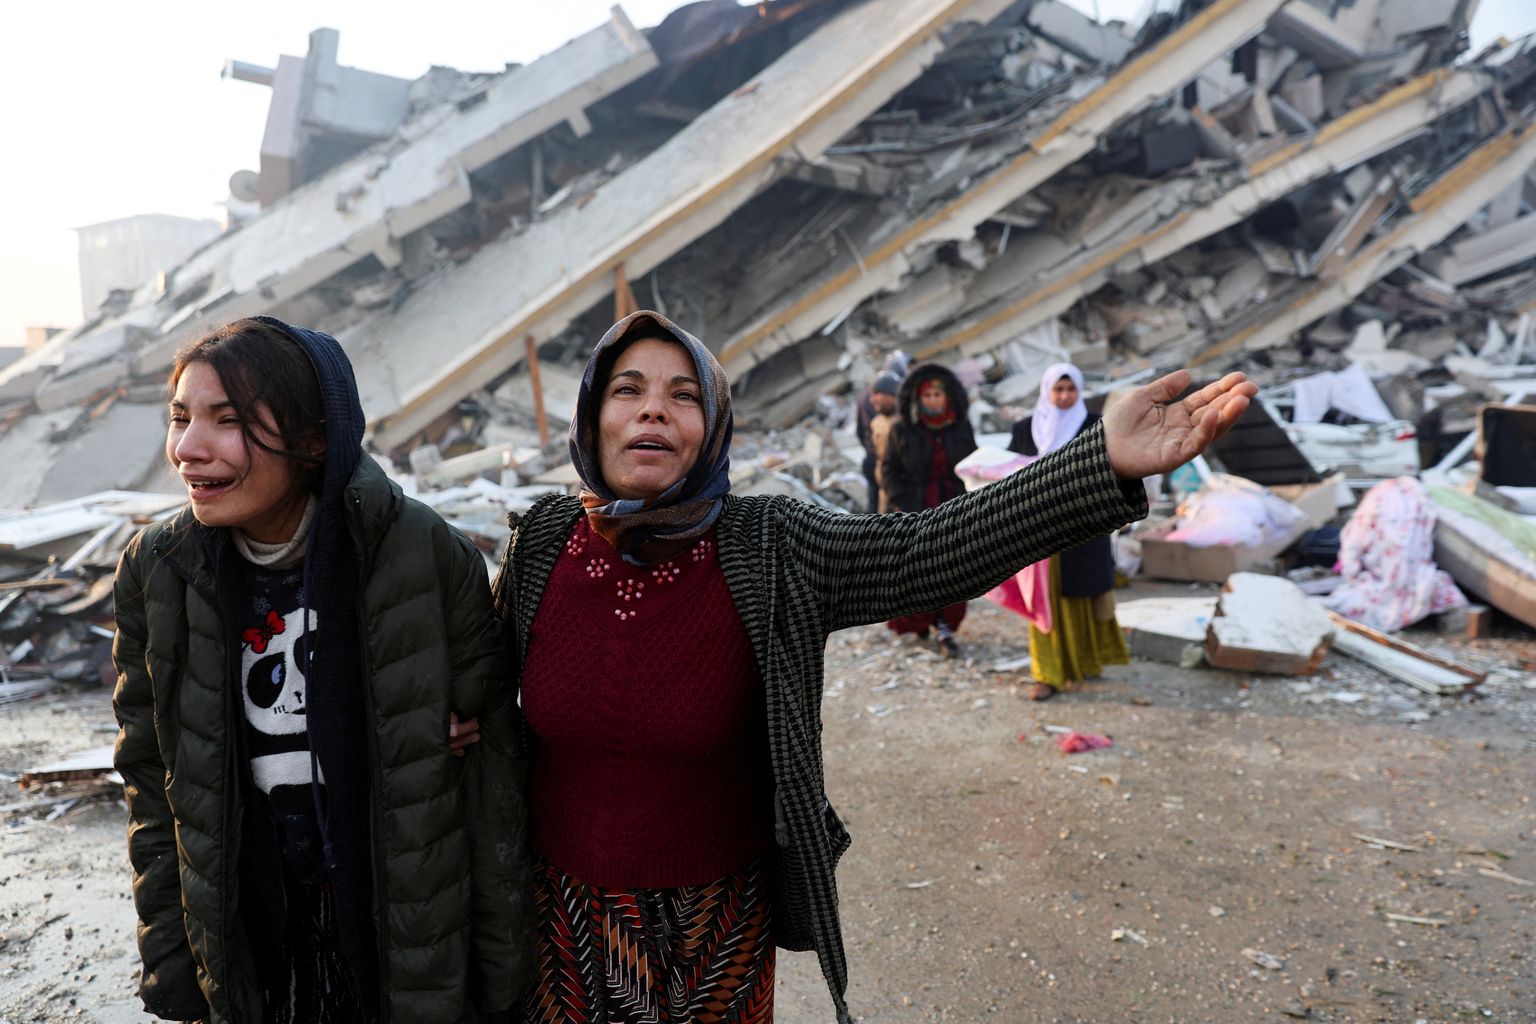 Ahastuses türklannad maavärinas hävinud elumaja ees.